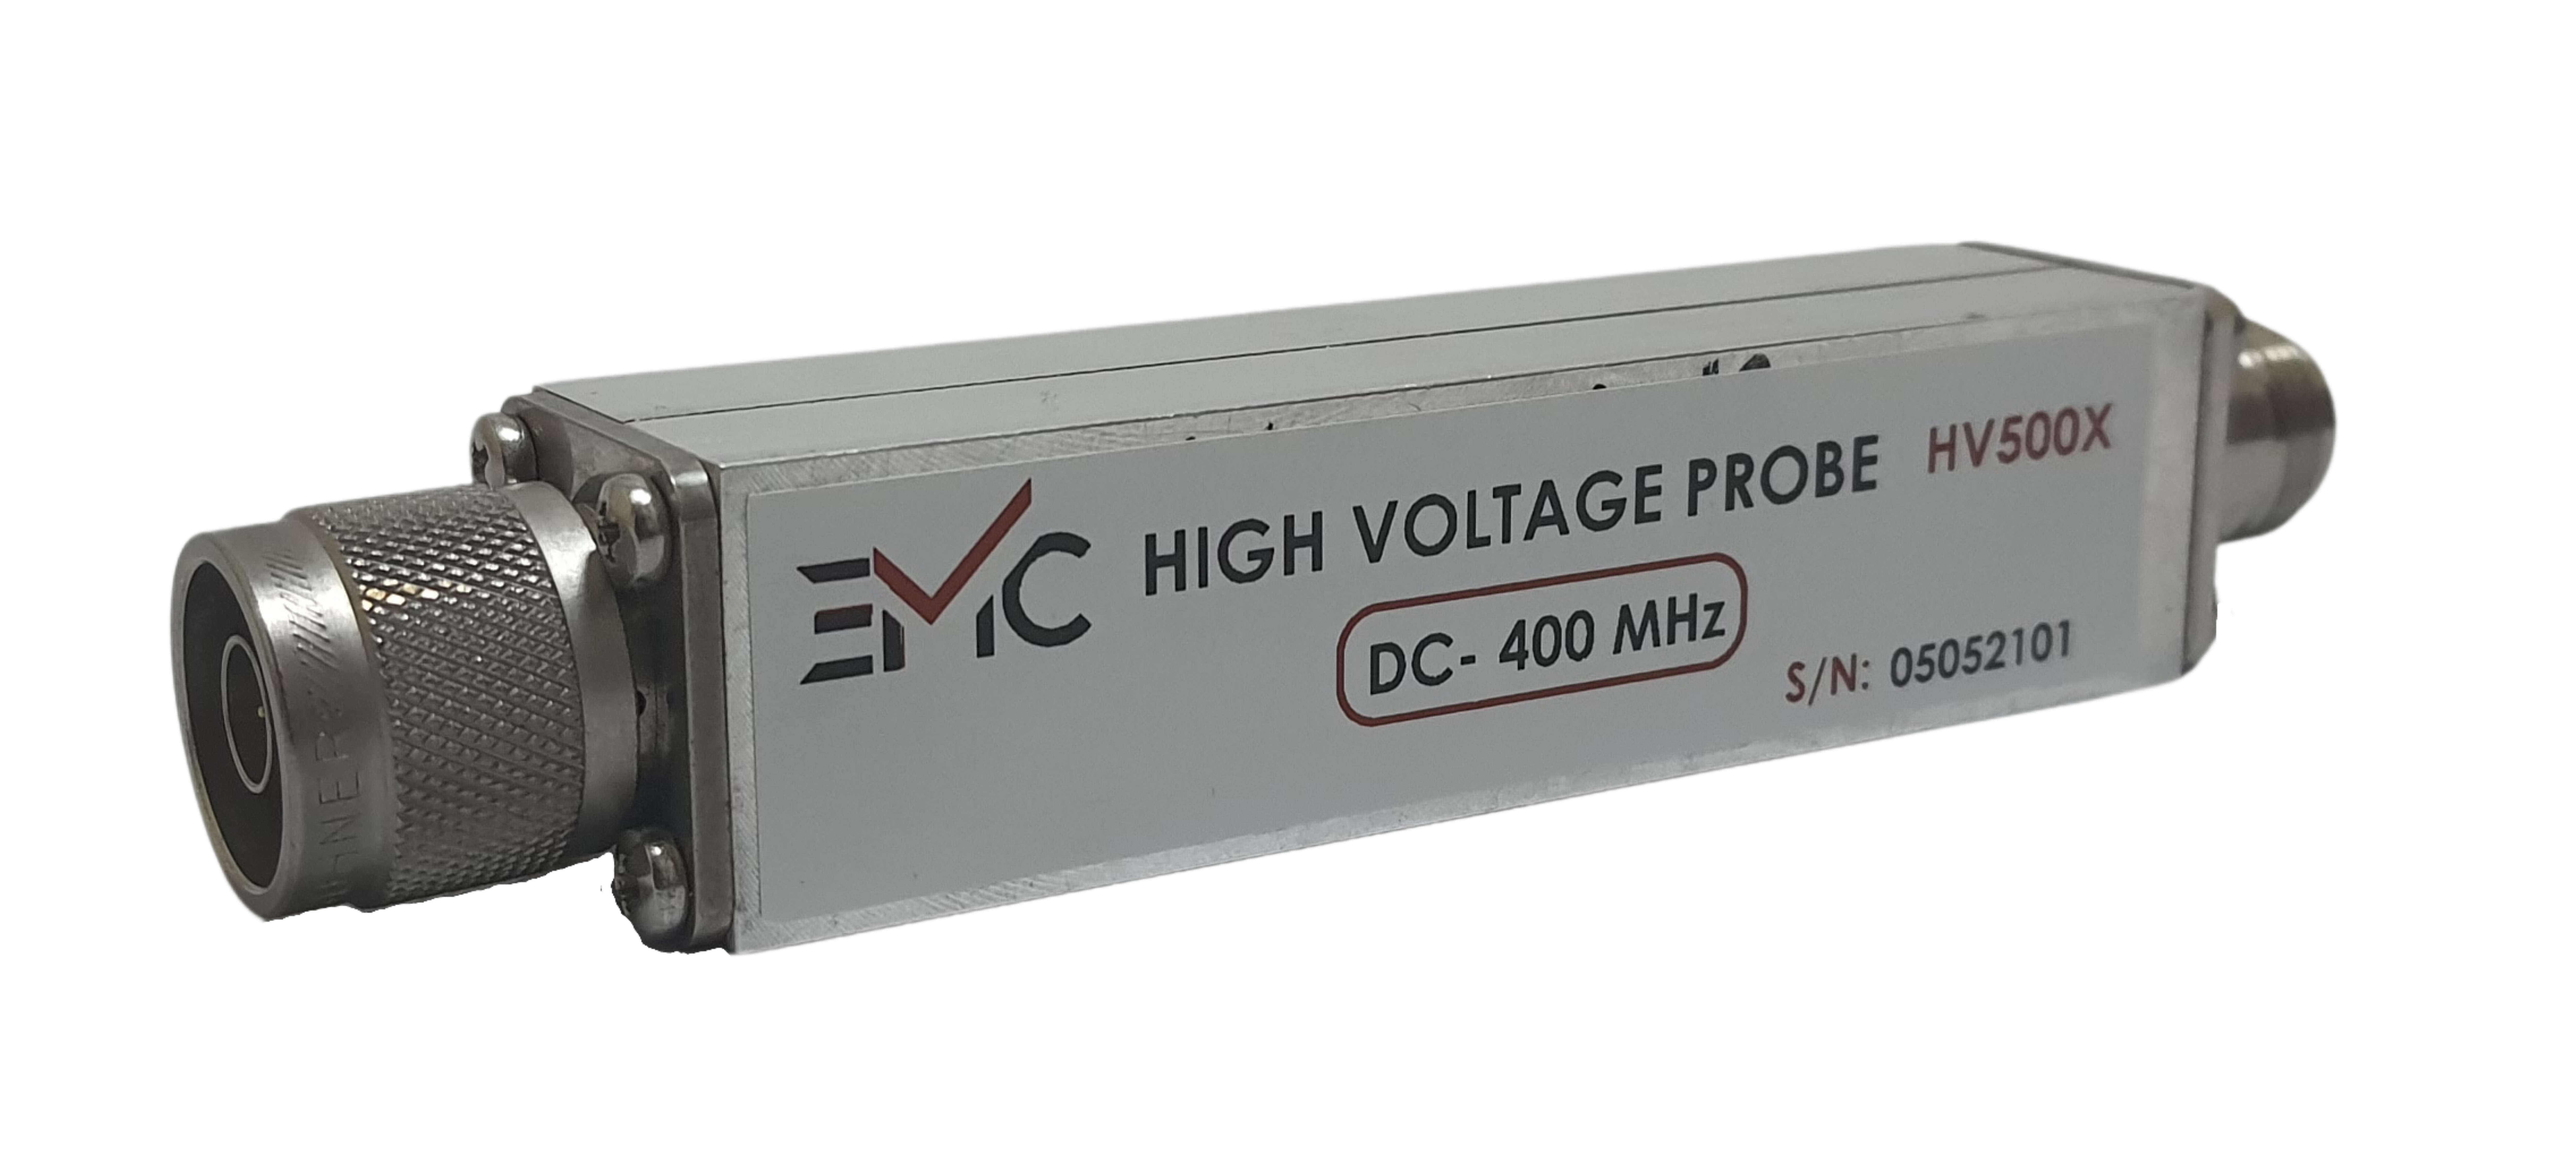 High Voltage Probe